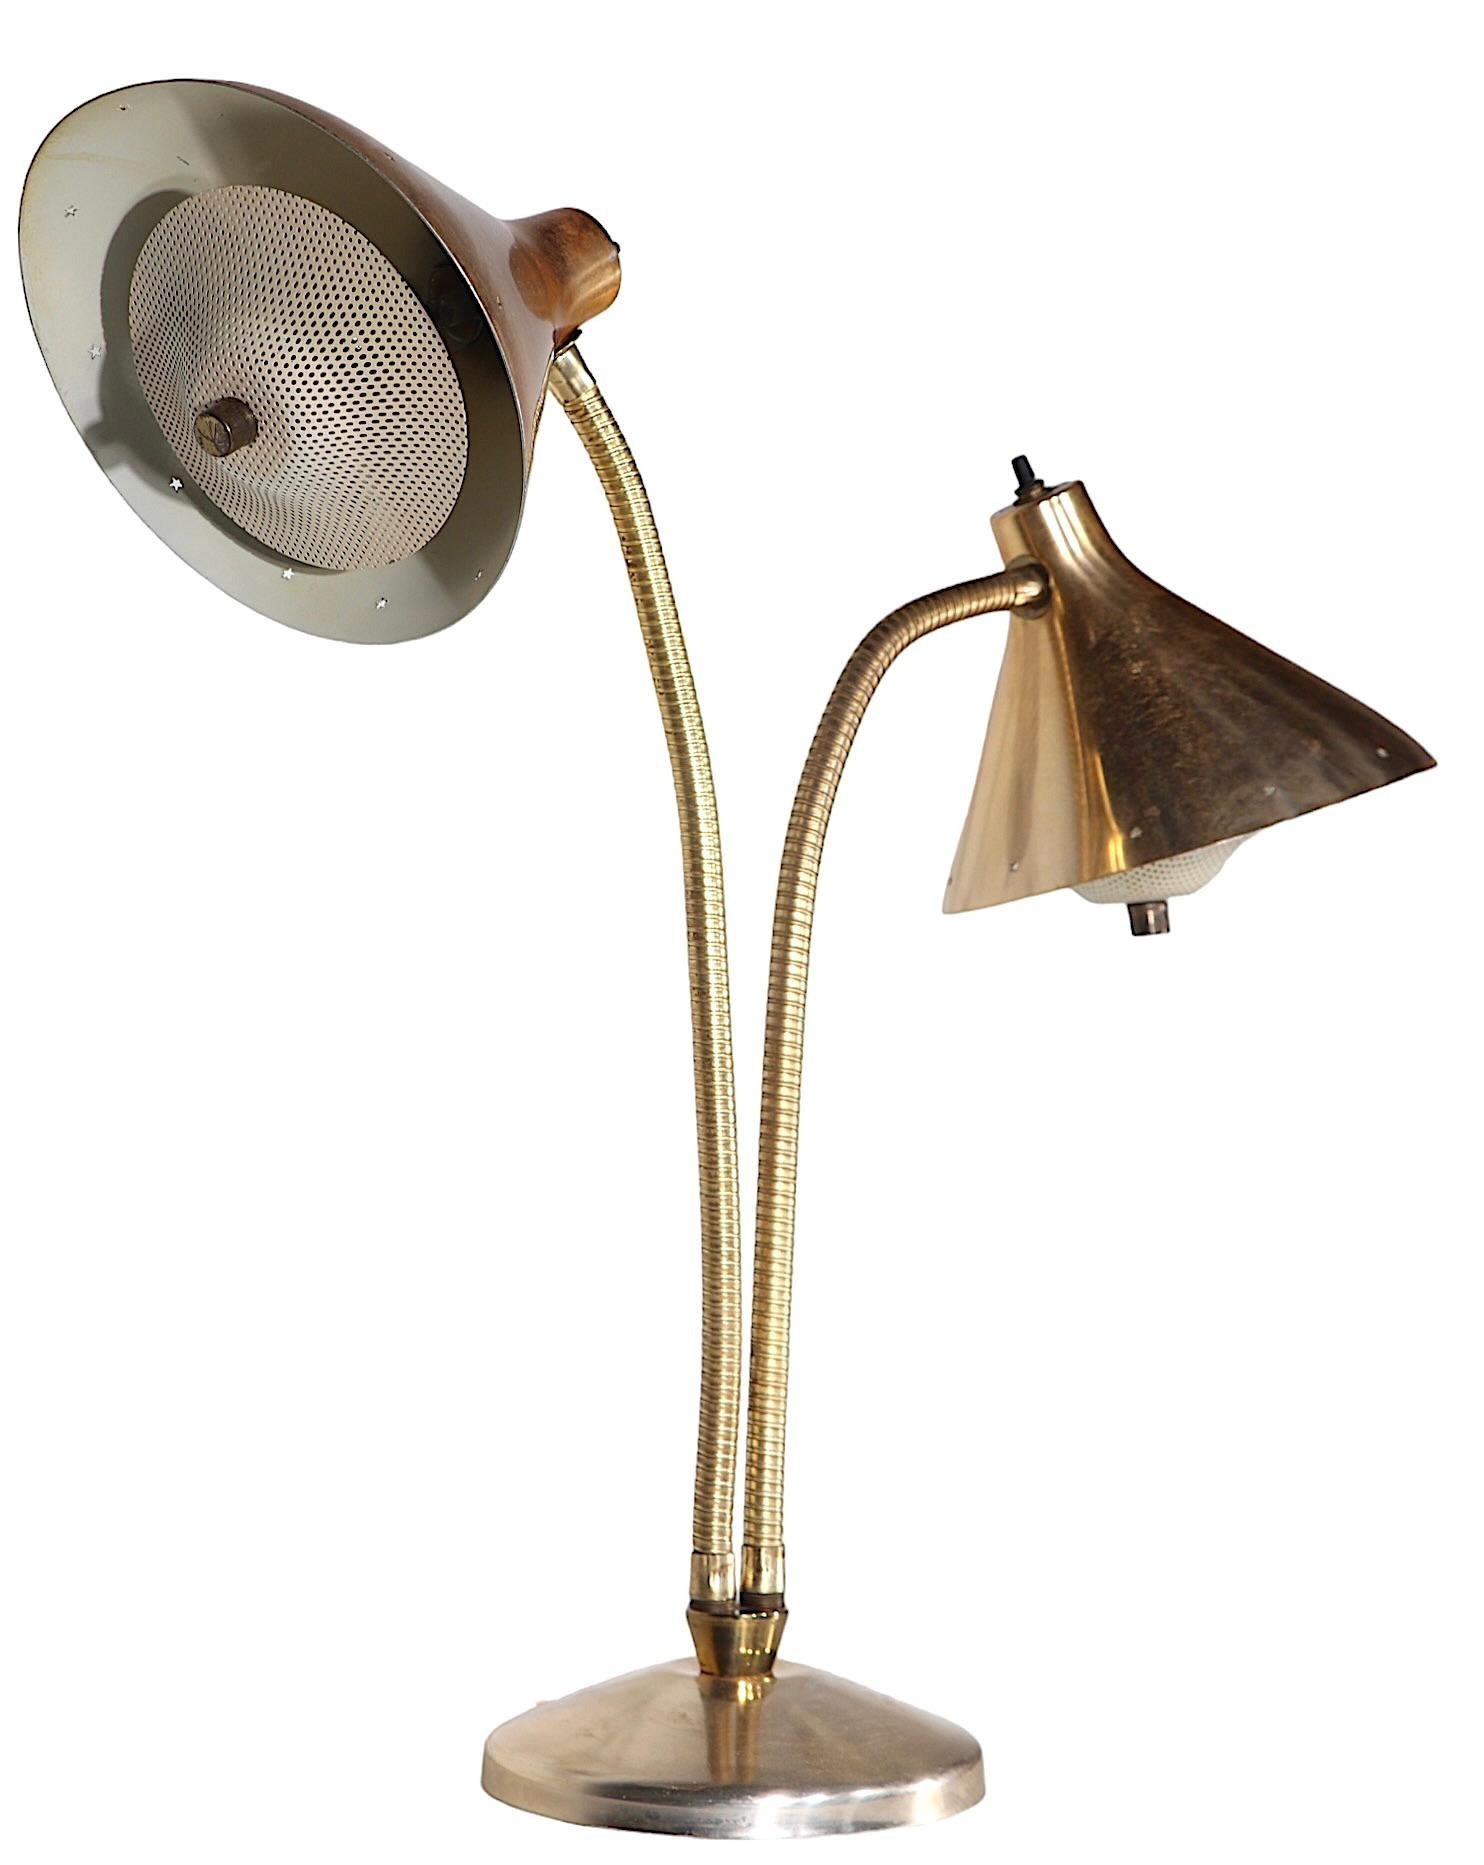 Chic deux lumières  Lampe de bureau à bras flexible, construite en aluminium anodisé de tonalité or/laiton, laiton et acier. La lampe comporte deux abat-jour à capuchon, chacun ayant encore son diffuseur perforé à clip d'origine. Probablement conçu